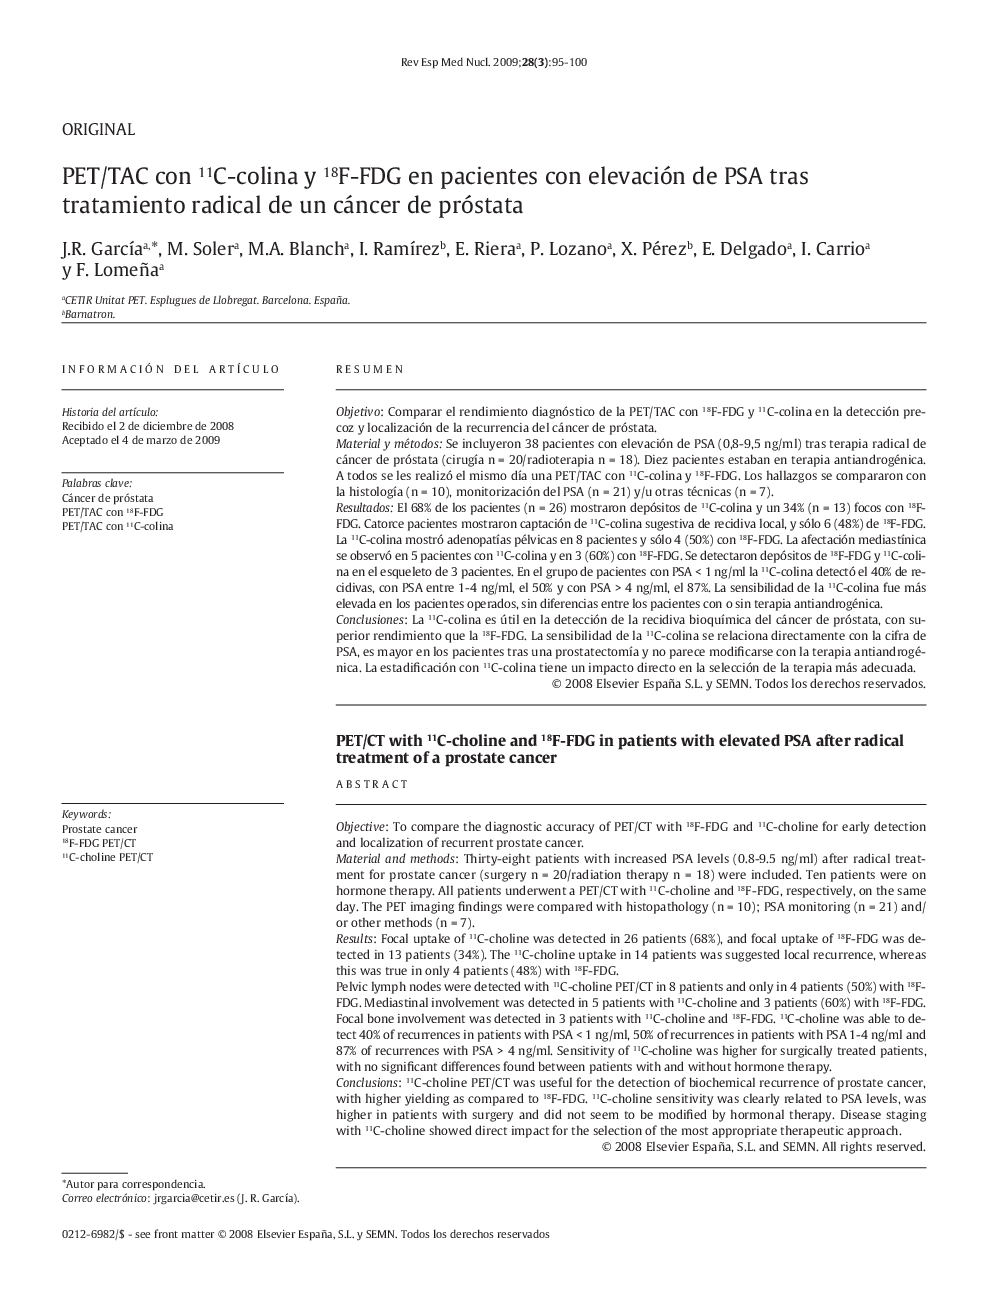 PET/TAC con 11C-colina y 18F-FDG en pacientes con elevación de PSA tras tratamiento radical de un cáncer de próstata